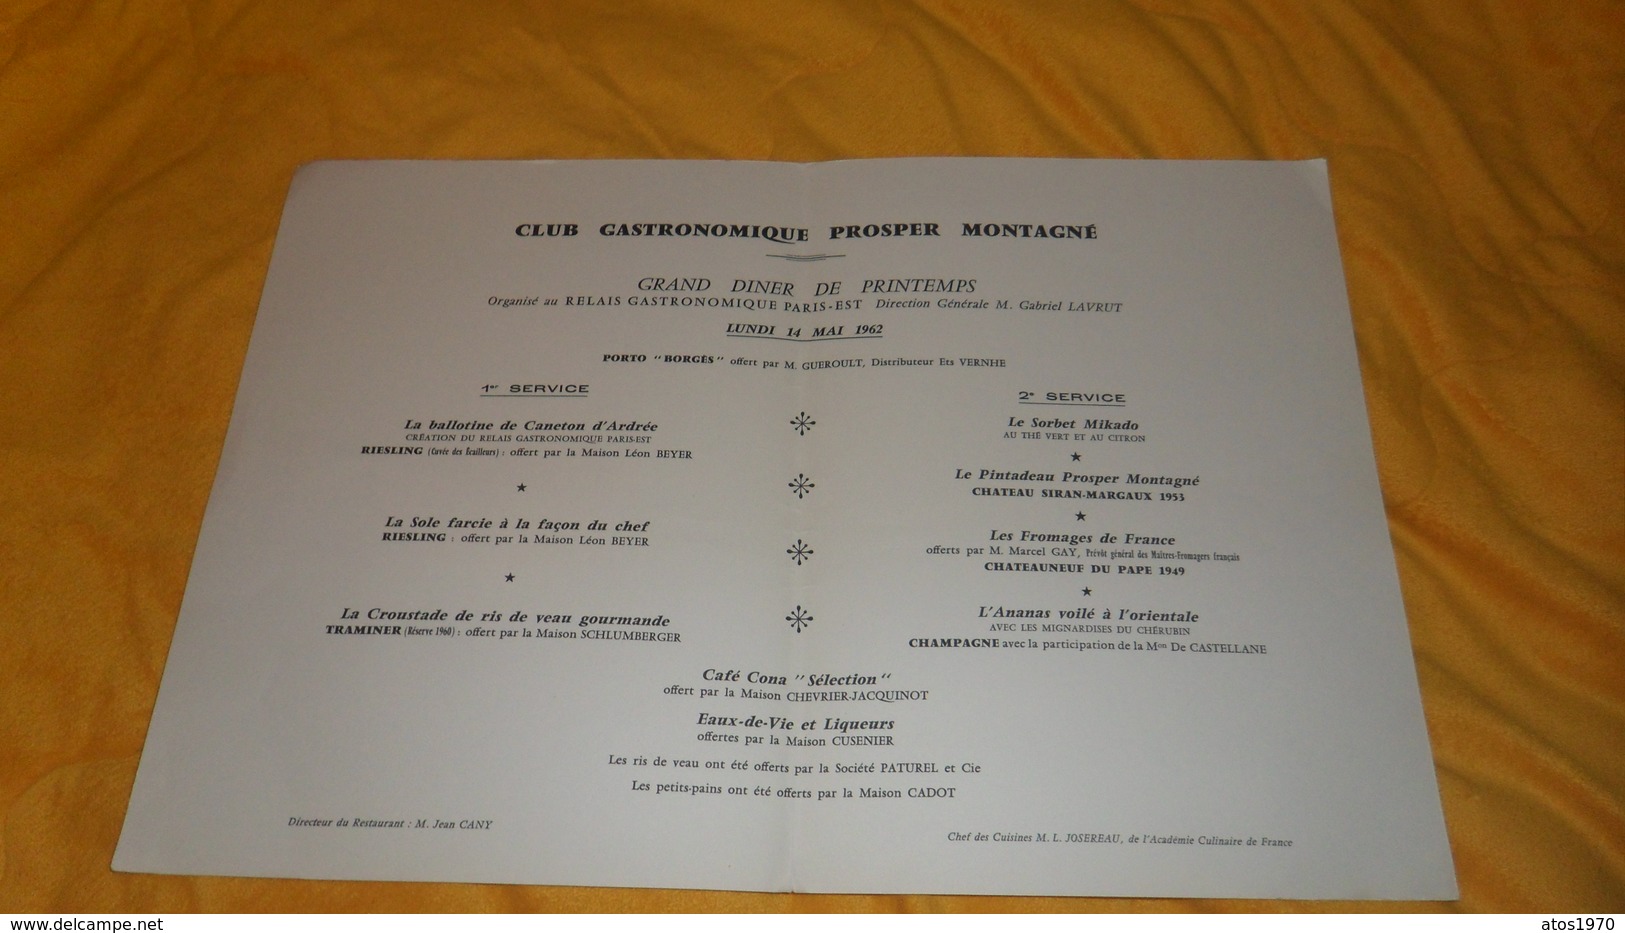 GRAND MENU ANCIEN DE 1962. / CLUB GASTRONOMIQUE PROSPER MONTAGNE. / GRAND DINER DE PRINTEMPS.. RELAIS GASTRO. PARIS EST. - Menus